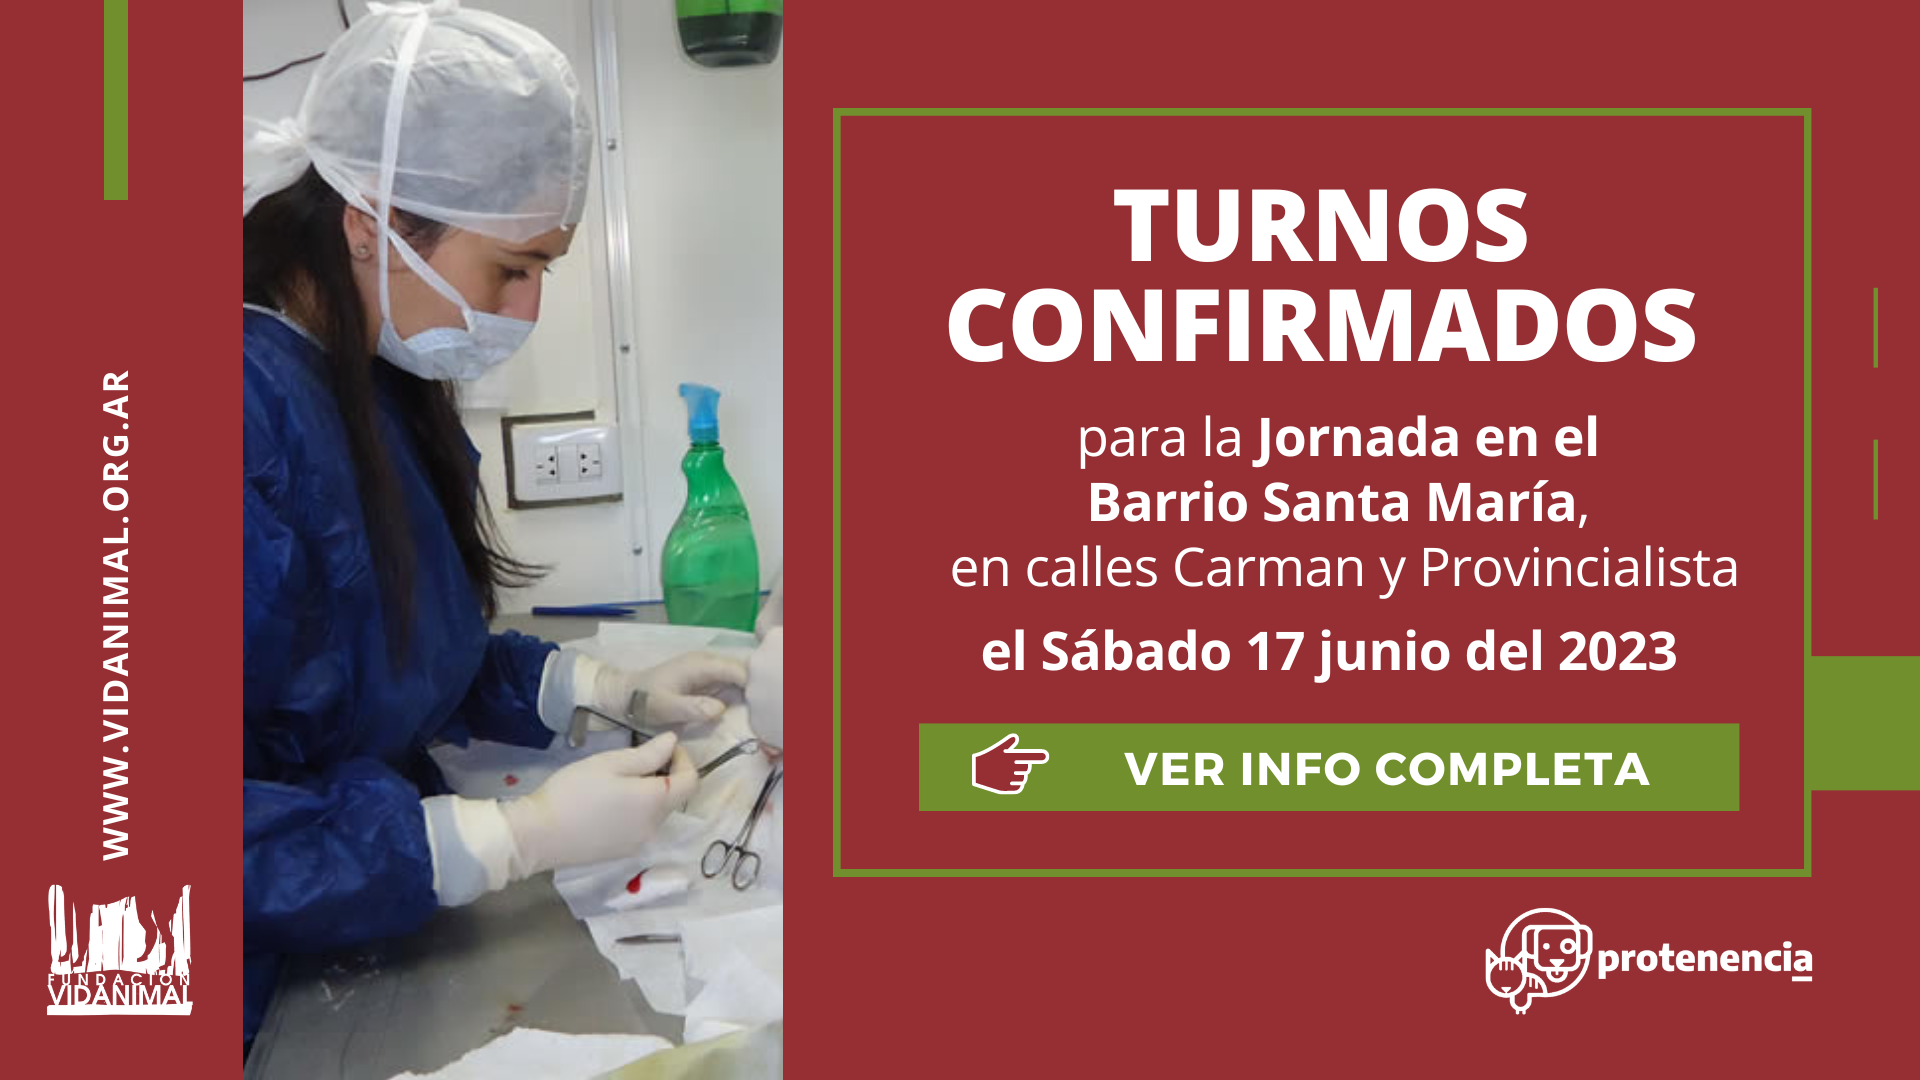 Lista de turnos confirmados: Jornada en el Barrio Santa María (Carman y Provincialista) – Sábado 17 de junio del 2023